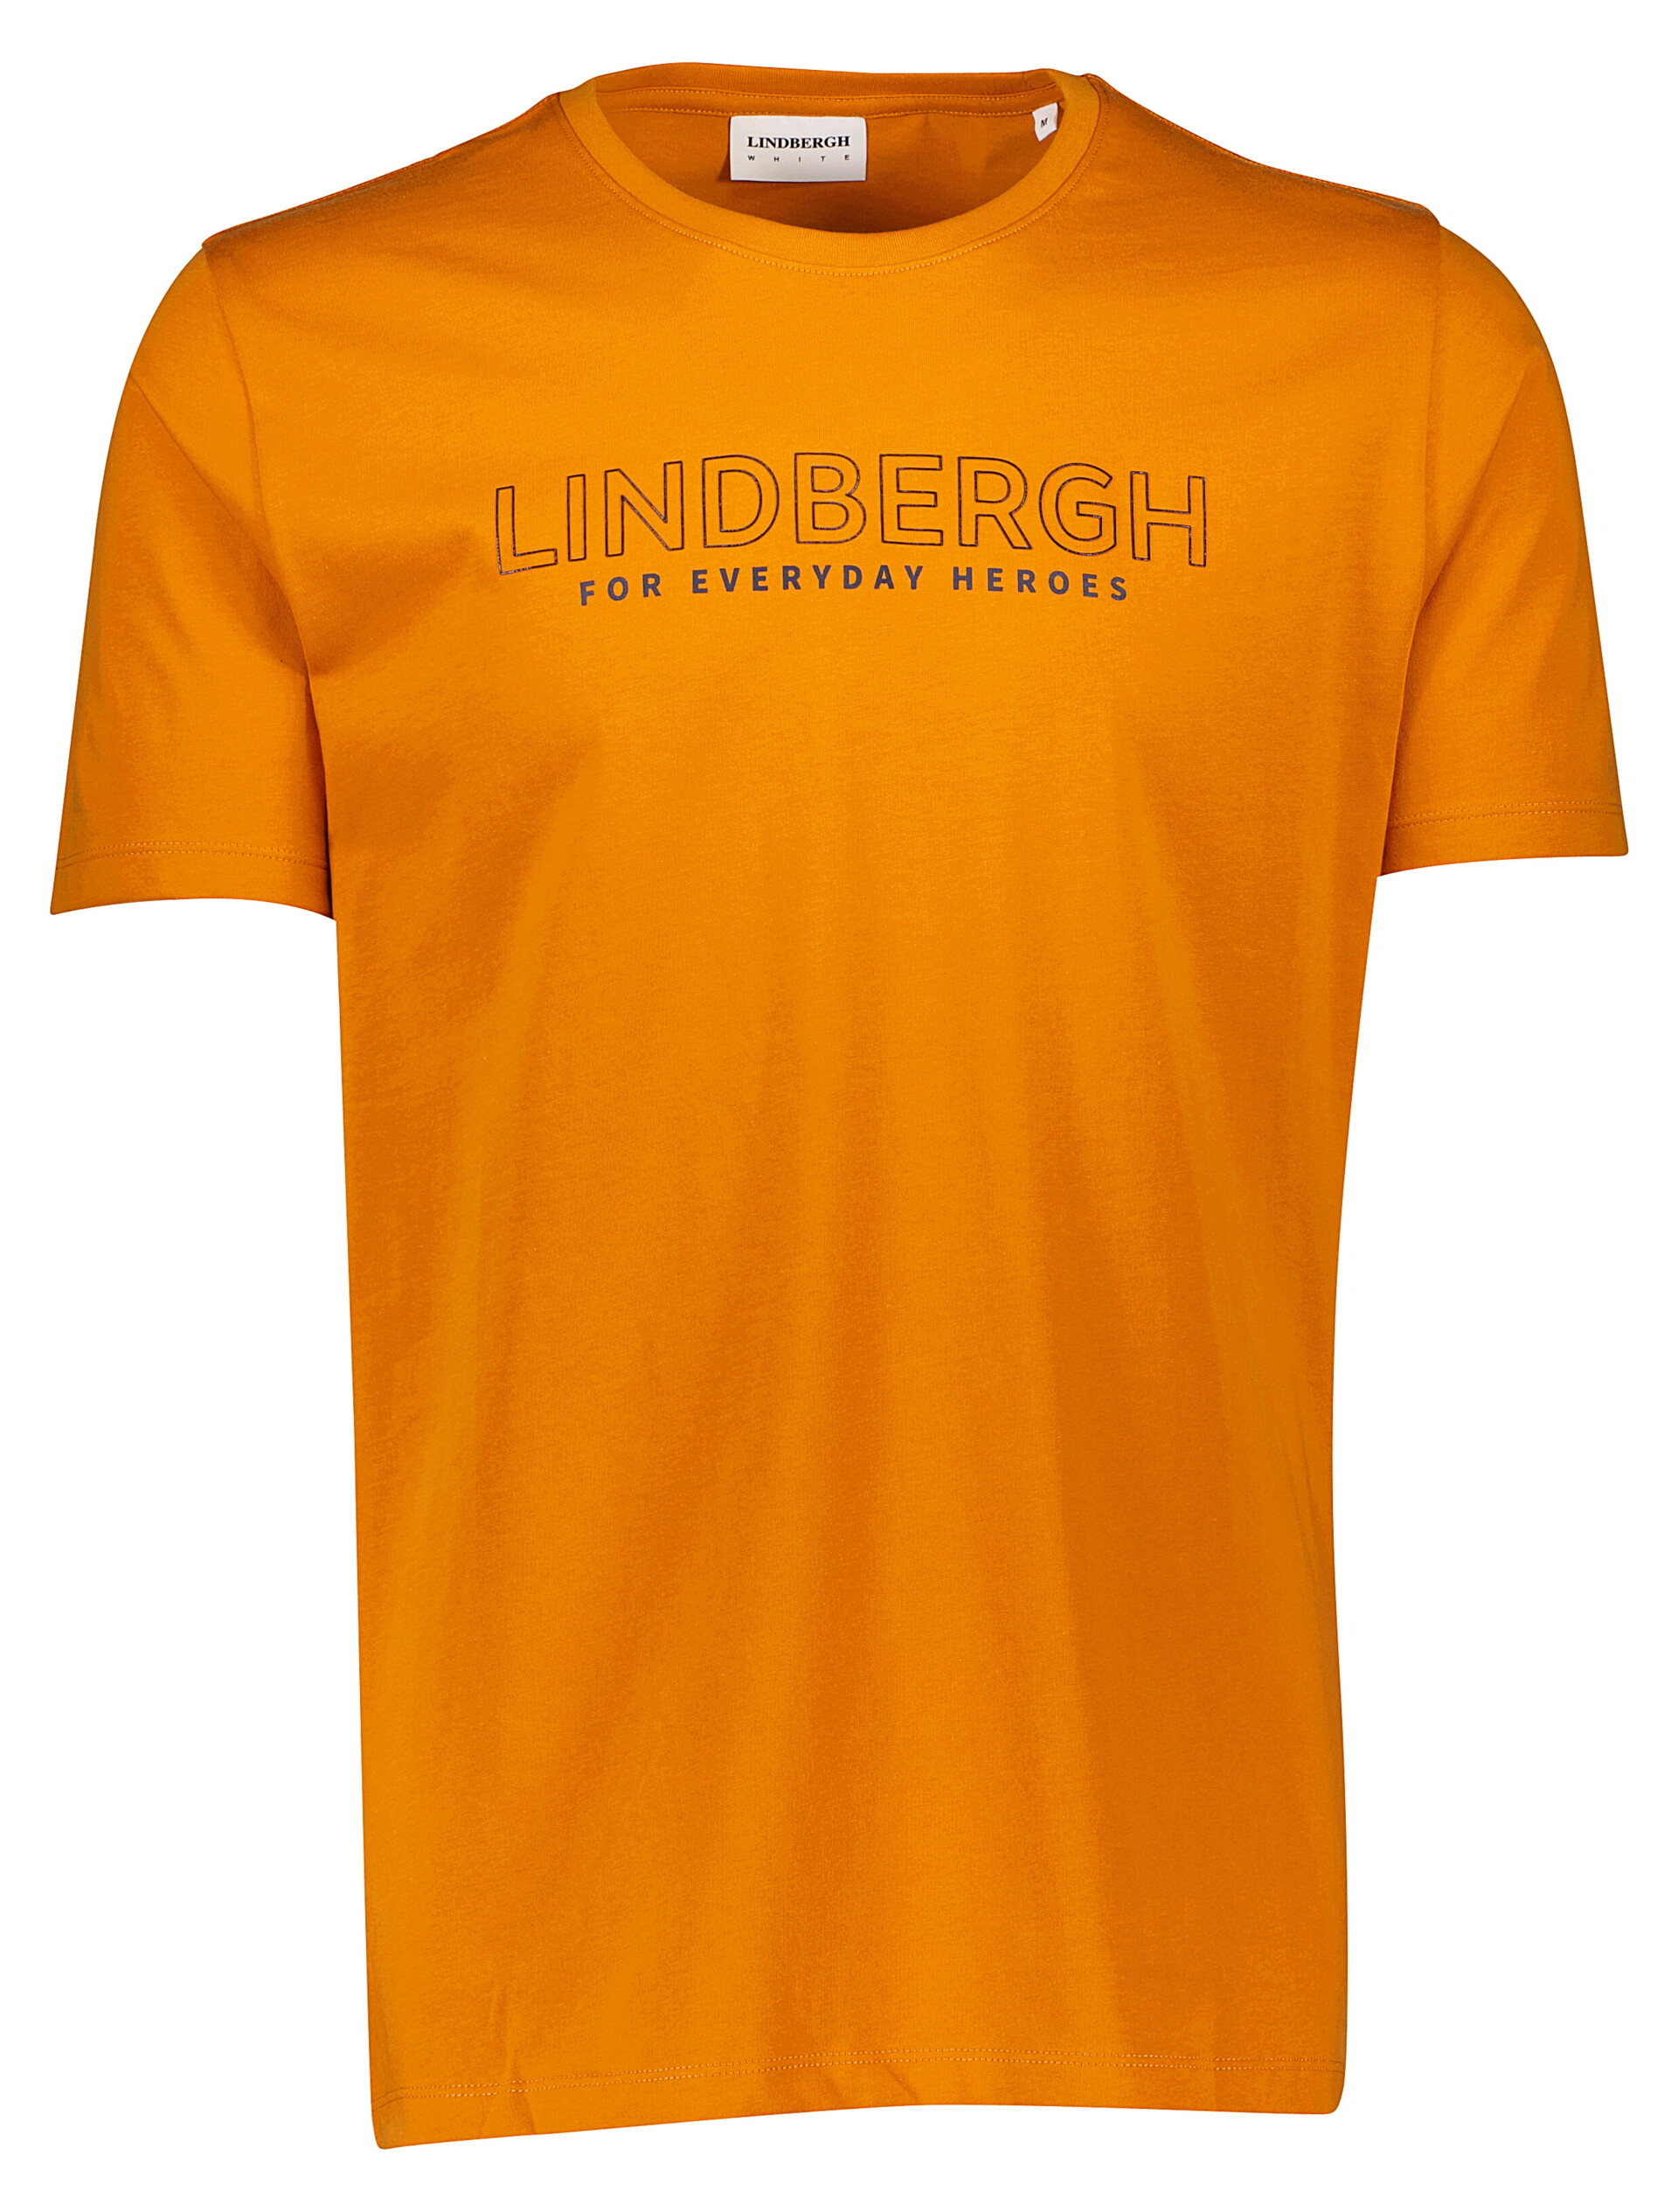 Lindbergh T-shirt oranje / lt orange